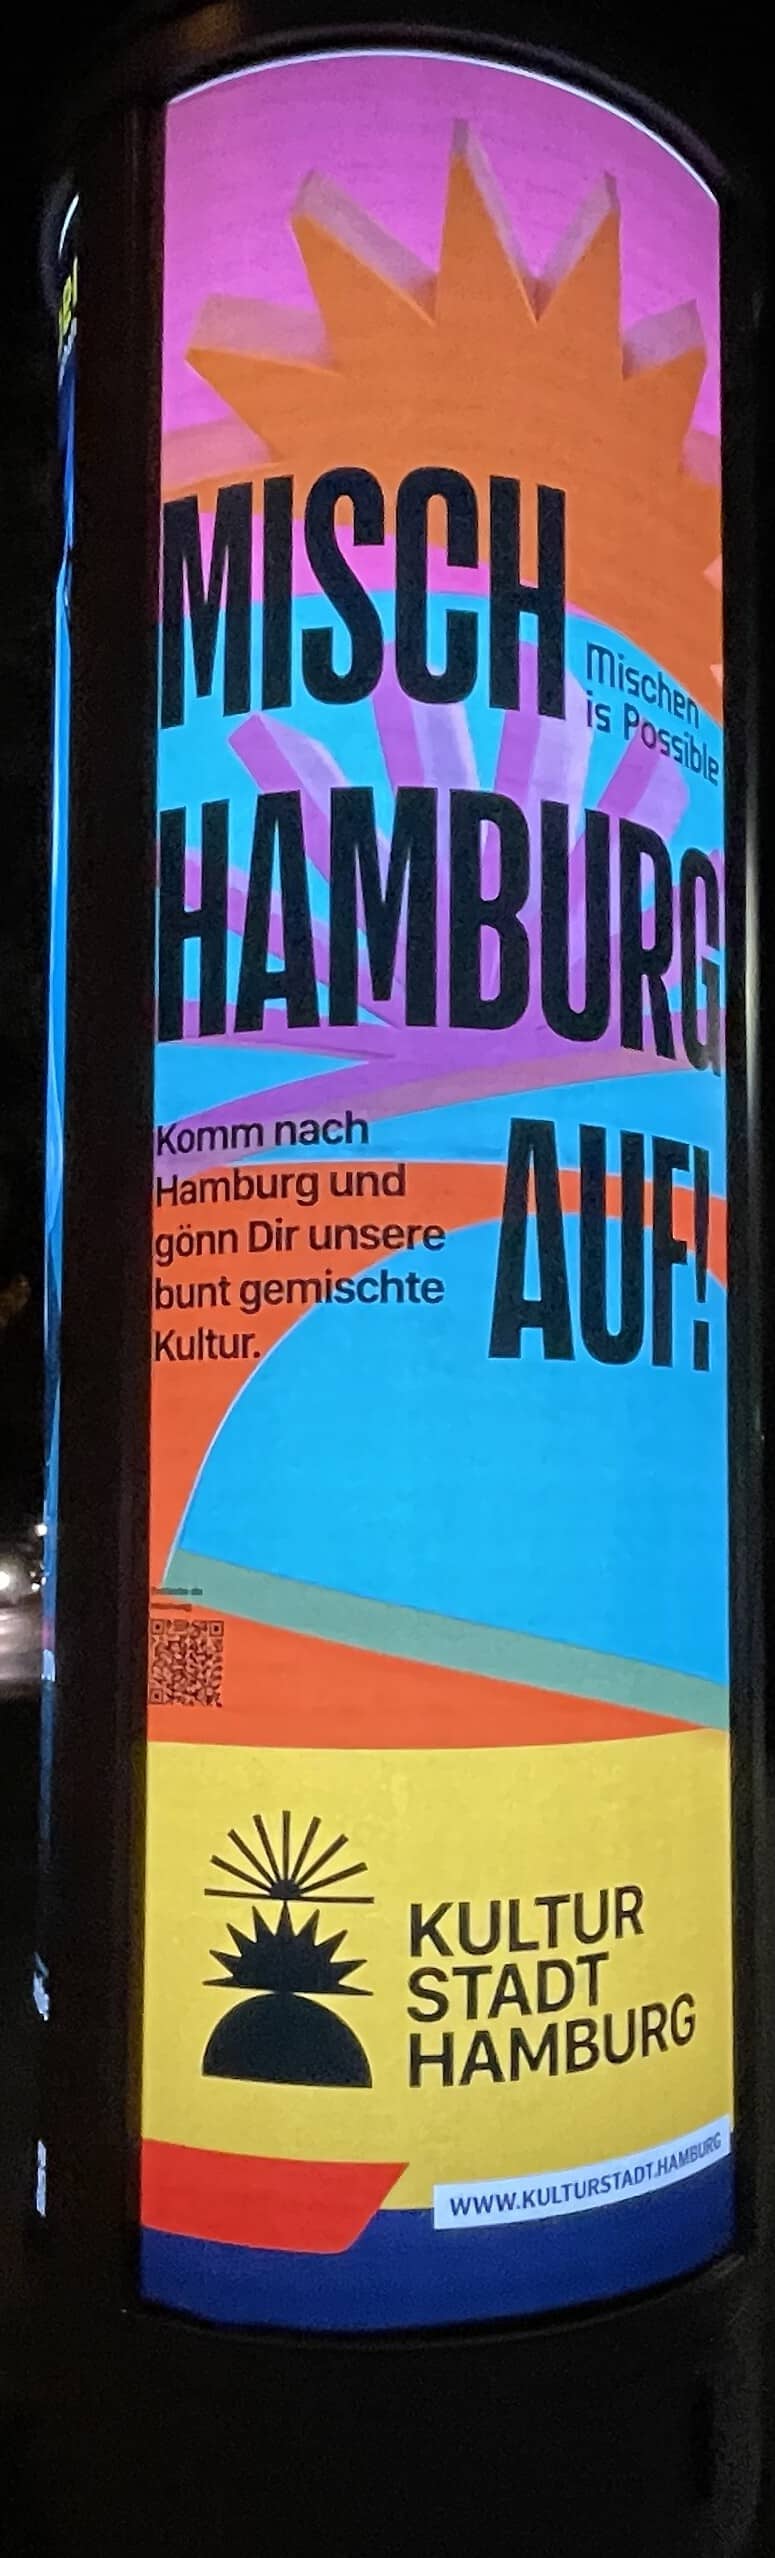 KULTUR STADT HAMBURG: Misch Hamburg auf - Litfaßsäulenreklame